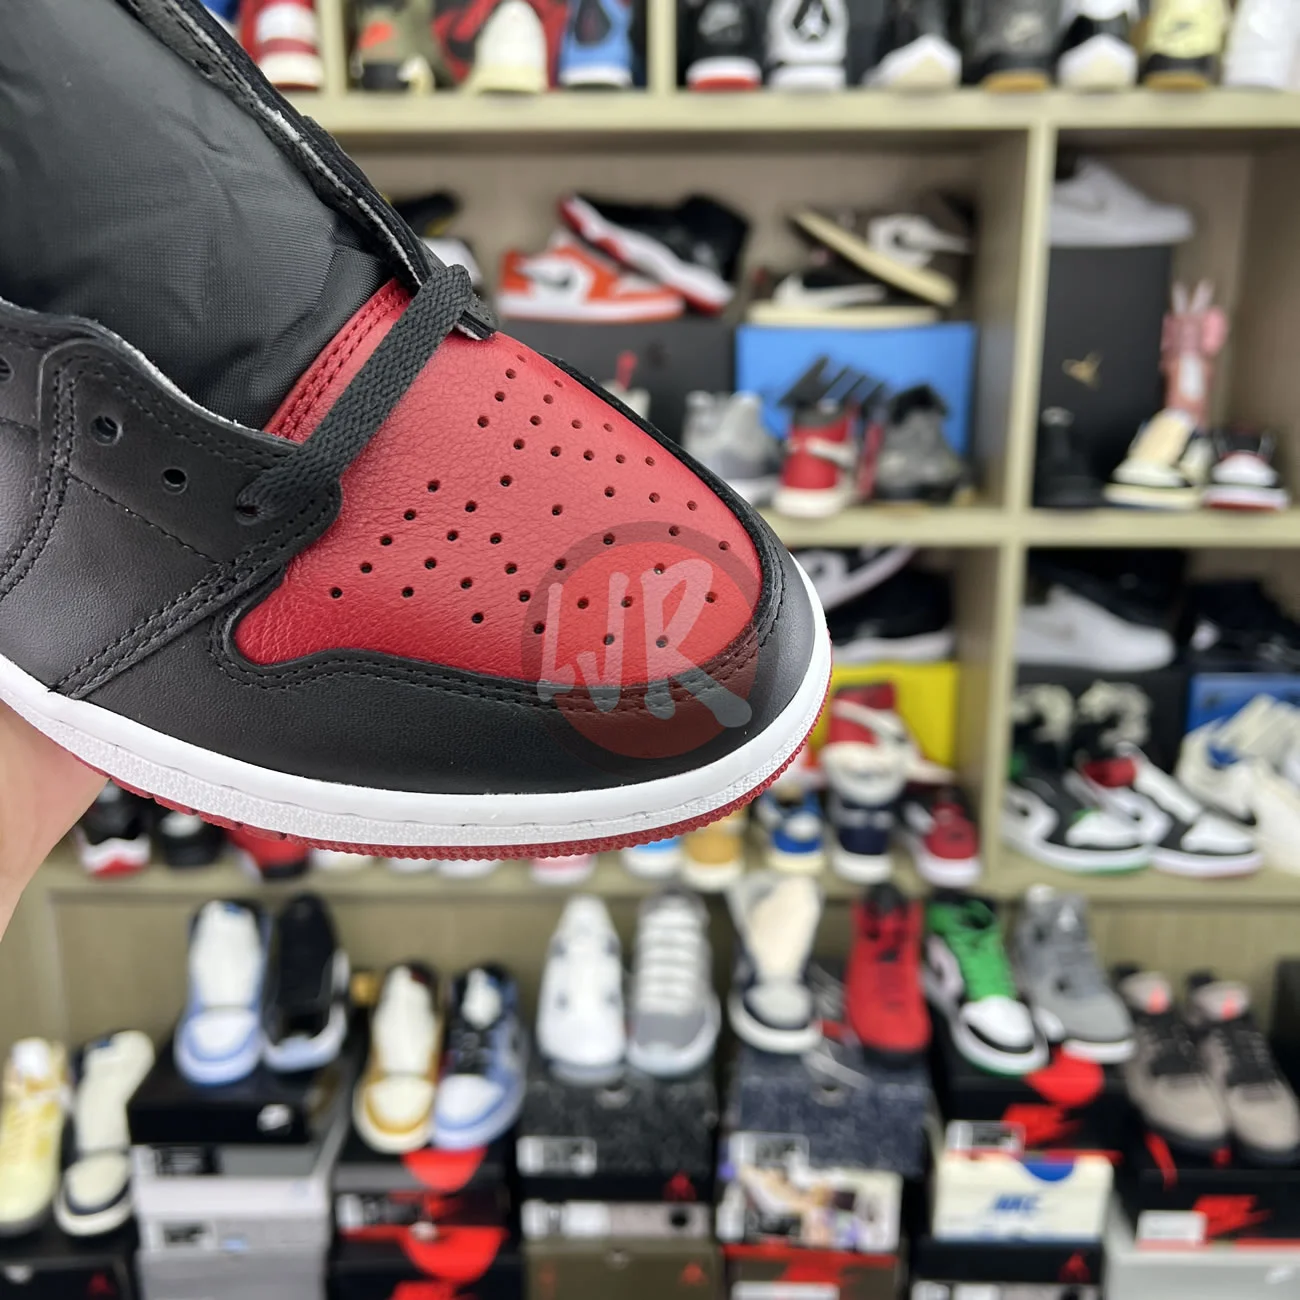 Air Jordan 1 Retro High Bred Banned 2016 555088 001 Ljr Sneakers (10) - bc-ljr.com